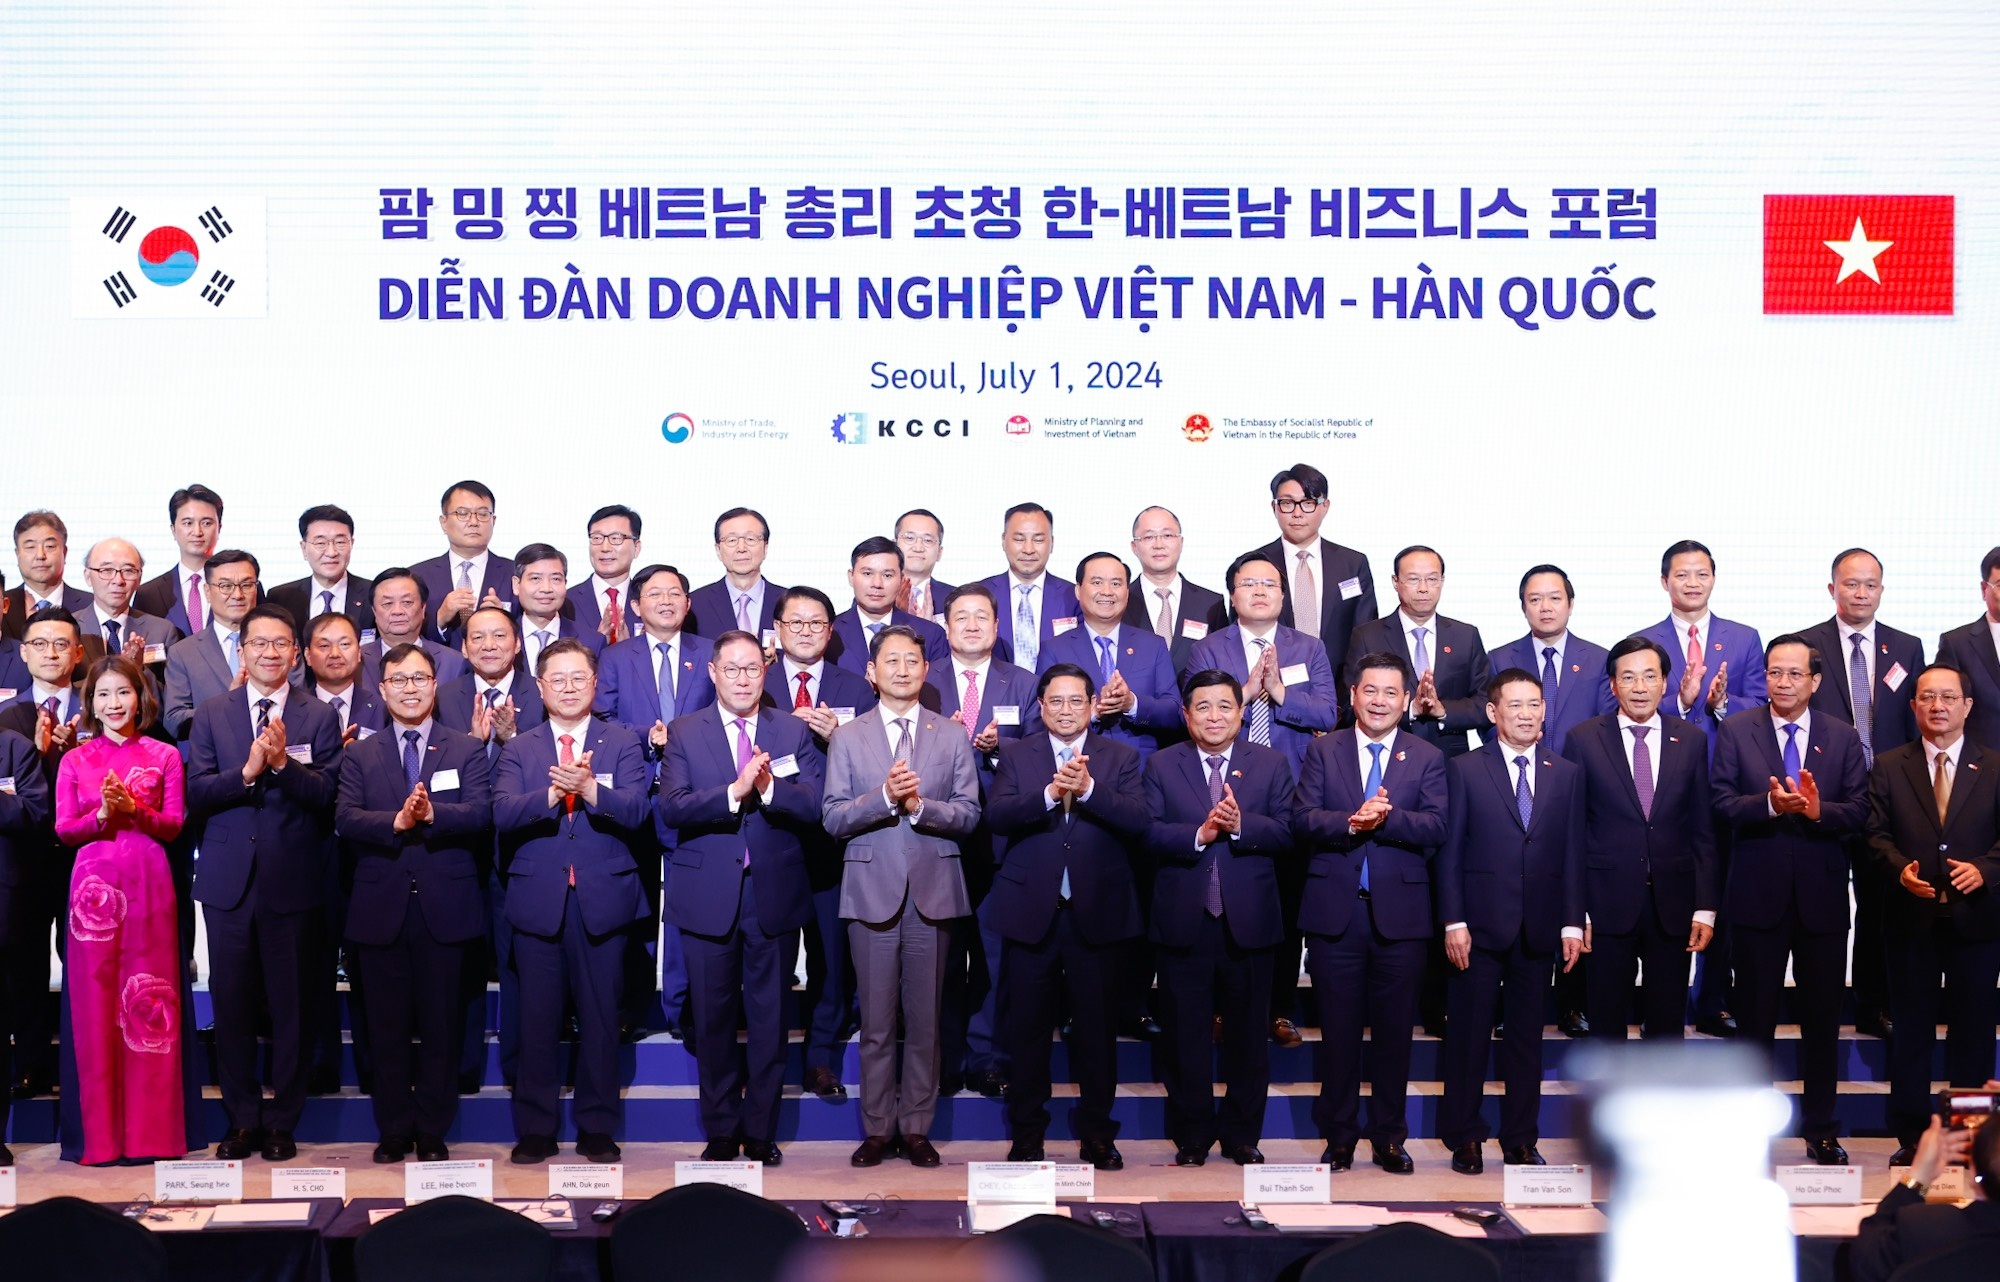 Diễn đàn Doanh nghiệp Việt Nam - Hàn Quốc: Kết nối để các doanh nghiệp "thăng hoa"